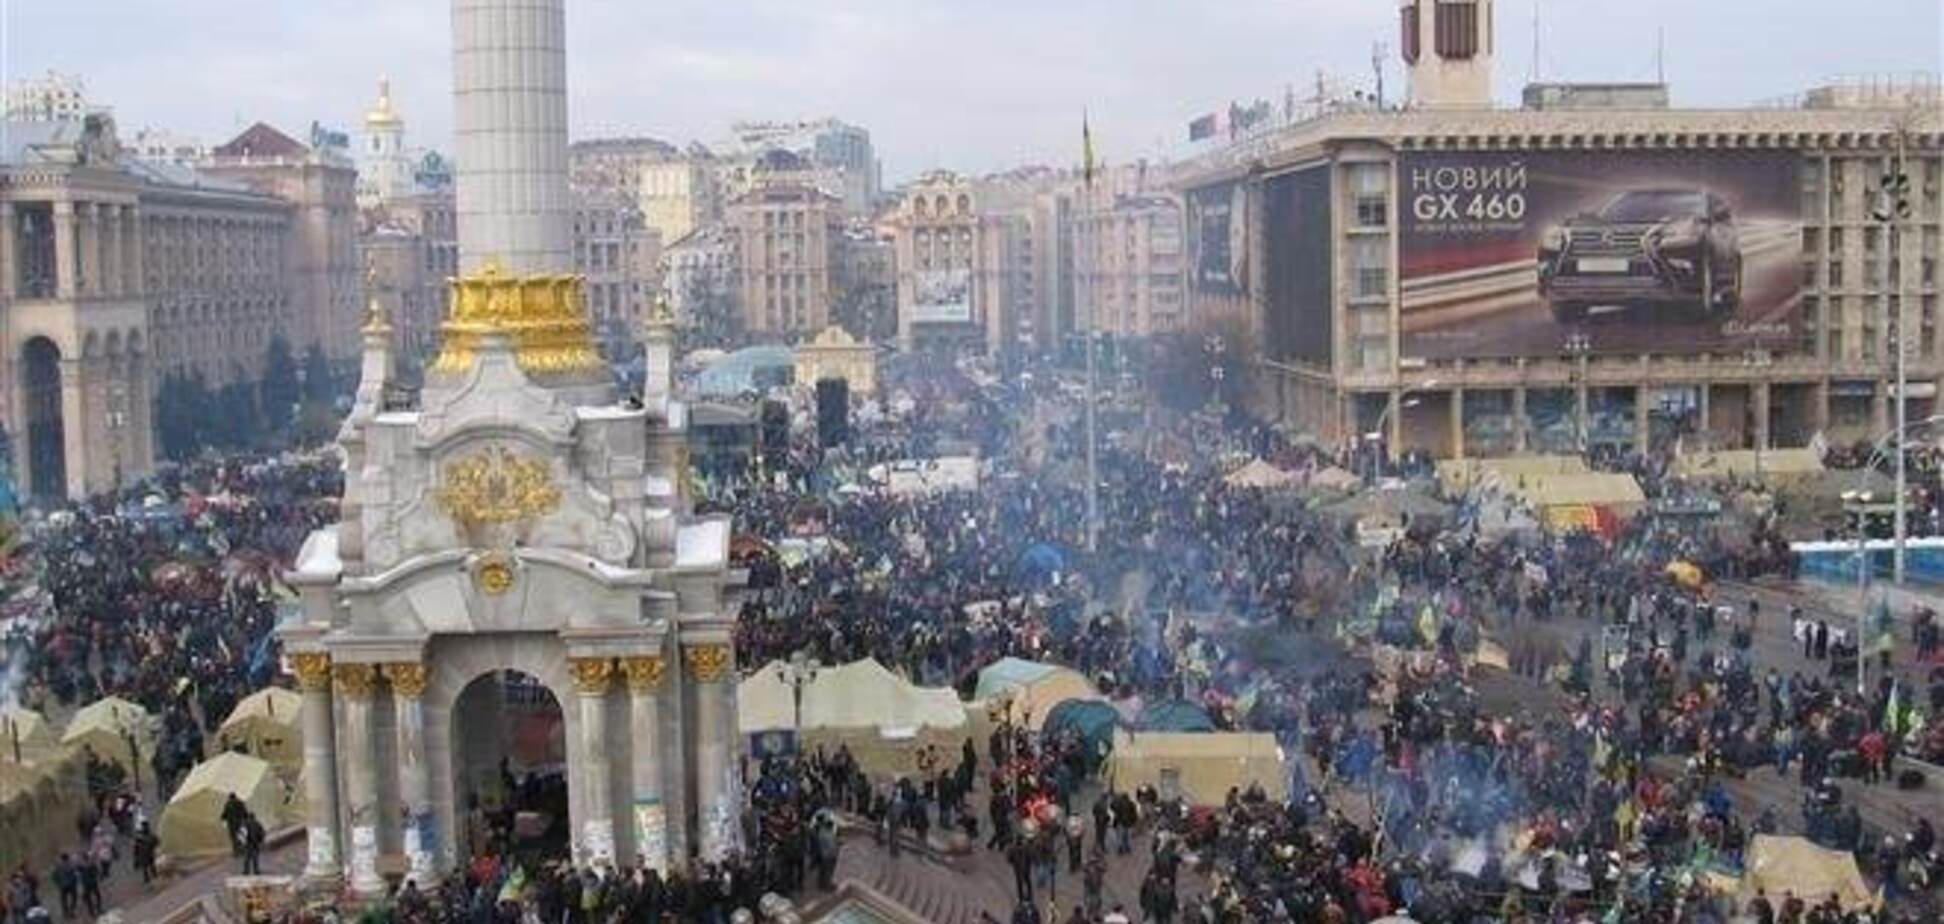 Українські політики хочуть зареєструвати 'Майдан', як торгову марку